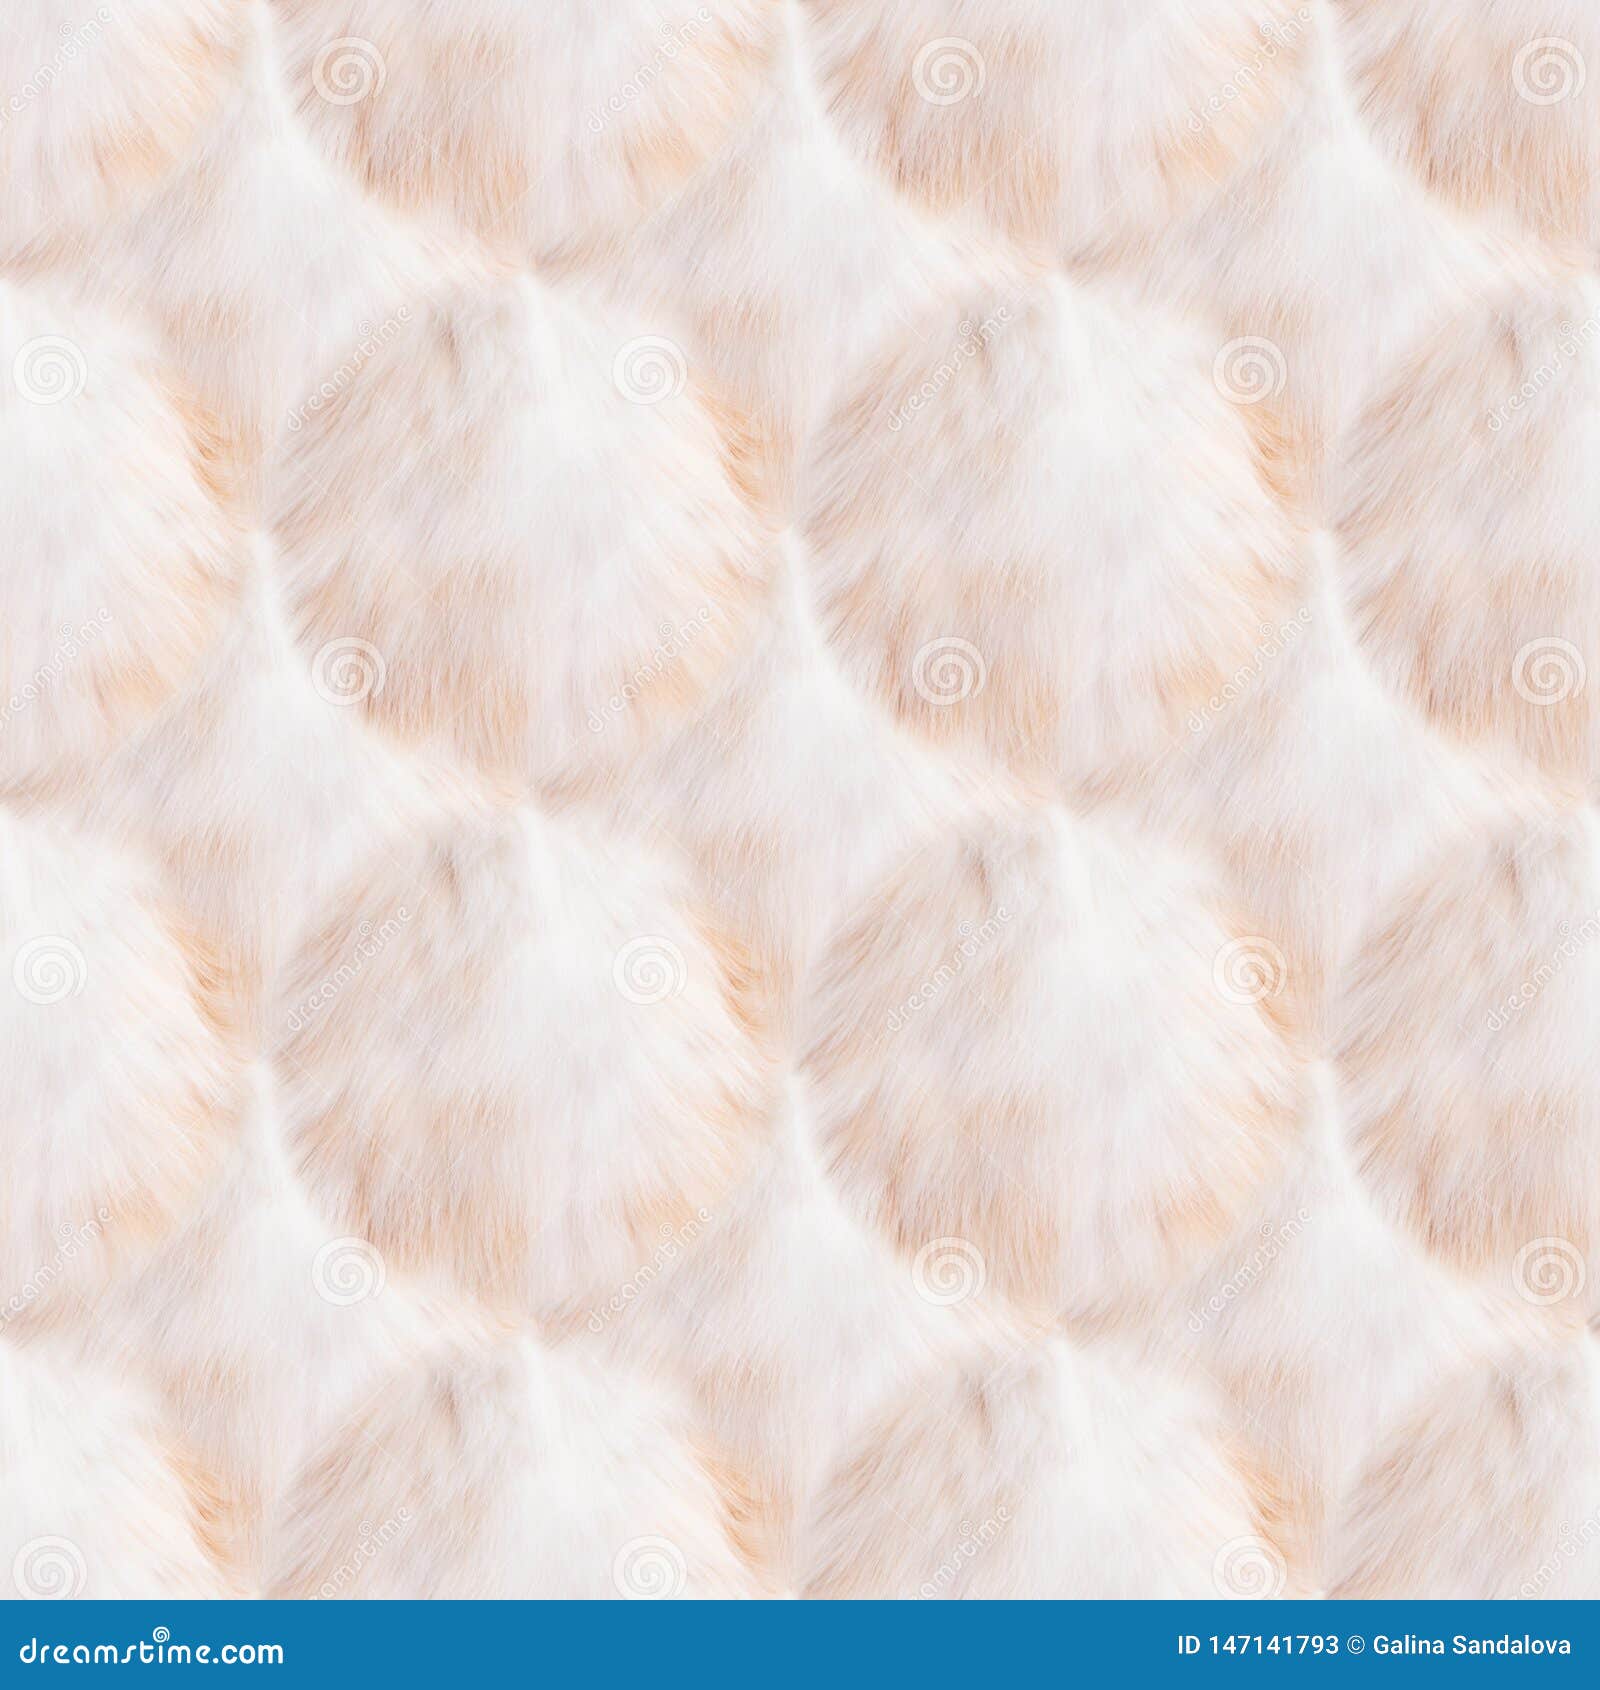 70 Fur Wallpaper patterns ideas  wallpaper cute wallpapers iphone  wallpaper